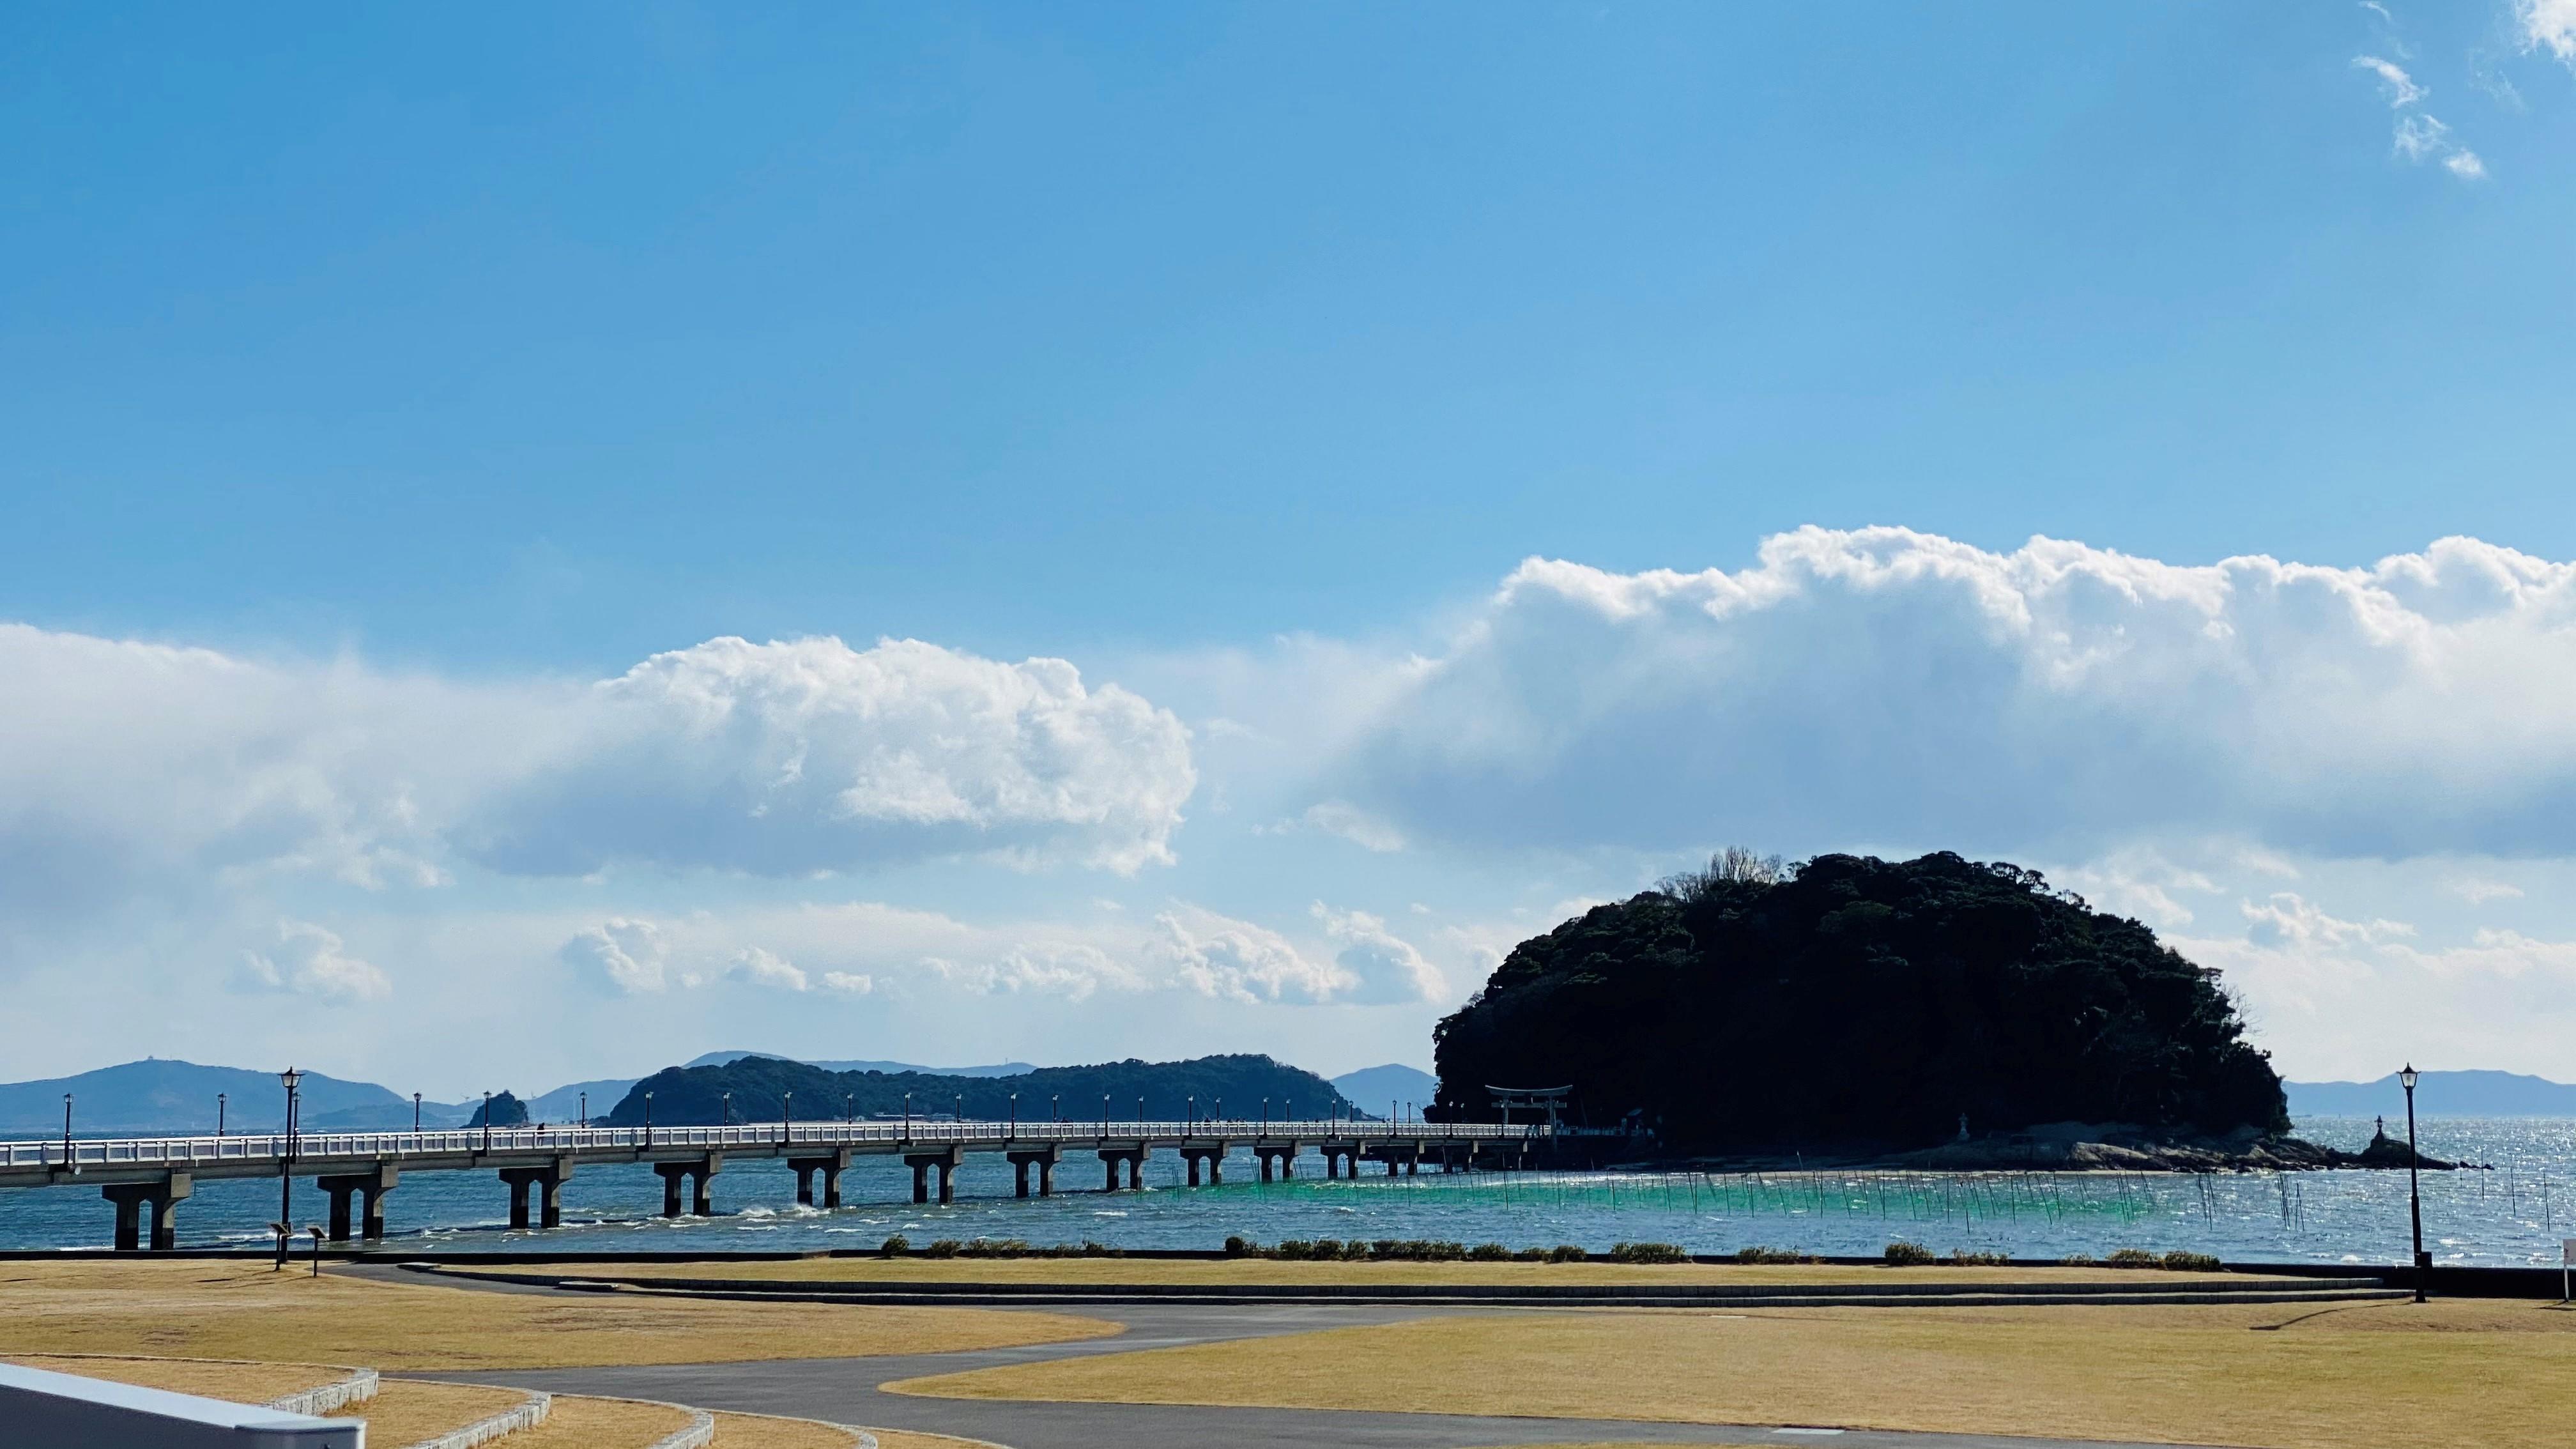 到着したのは、竹島。海の向こうに浮かぶ島に架かる橋が造形美を感じさせます。